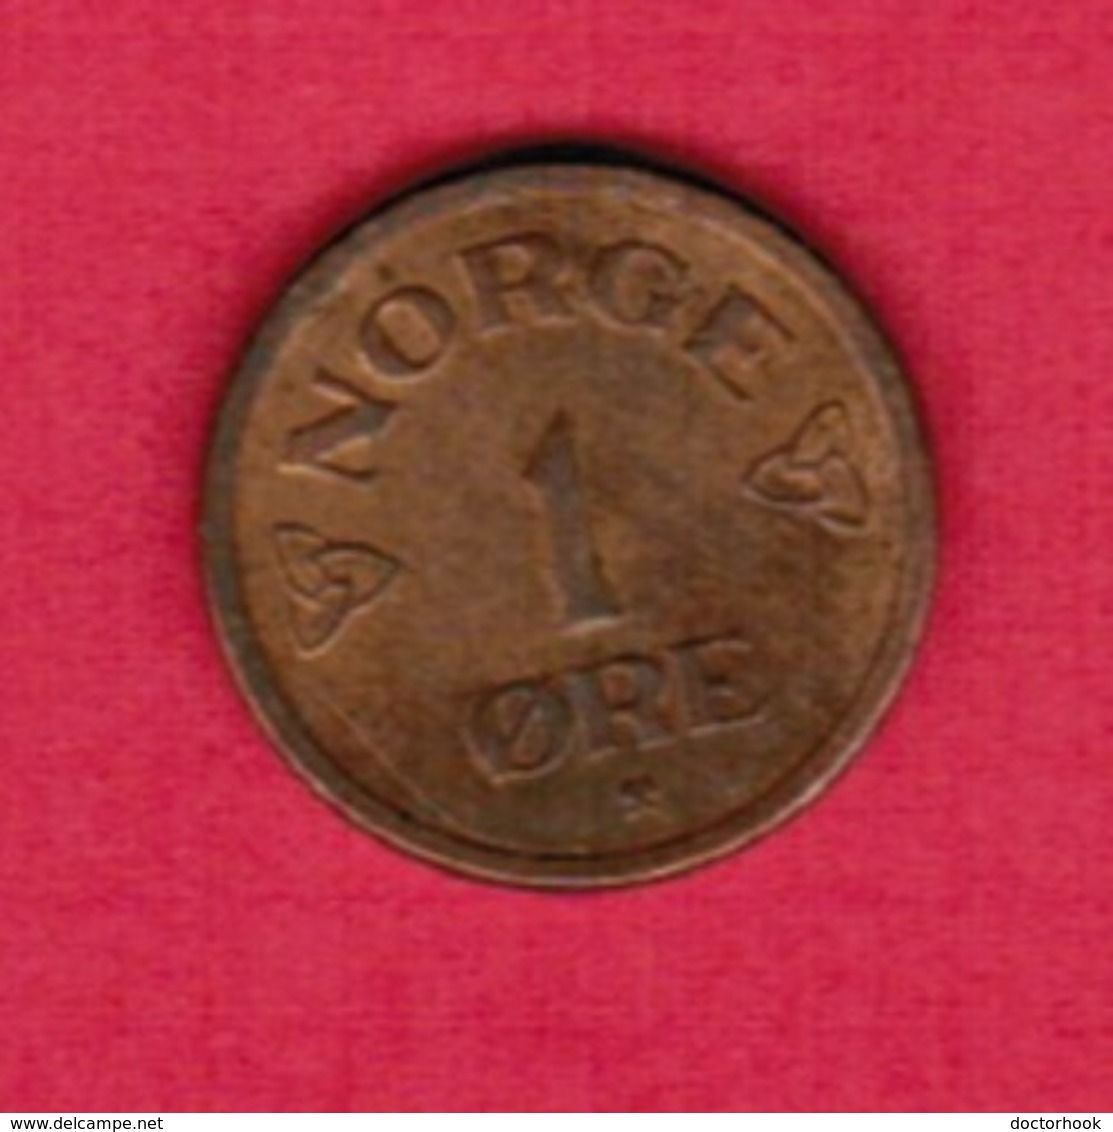 NORWAY  1 ORE 1955 (KM # 398) #5413 - Norway